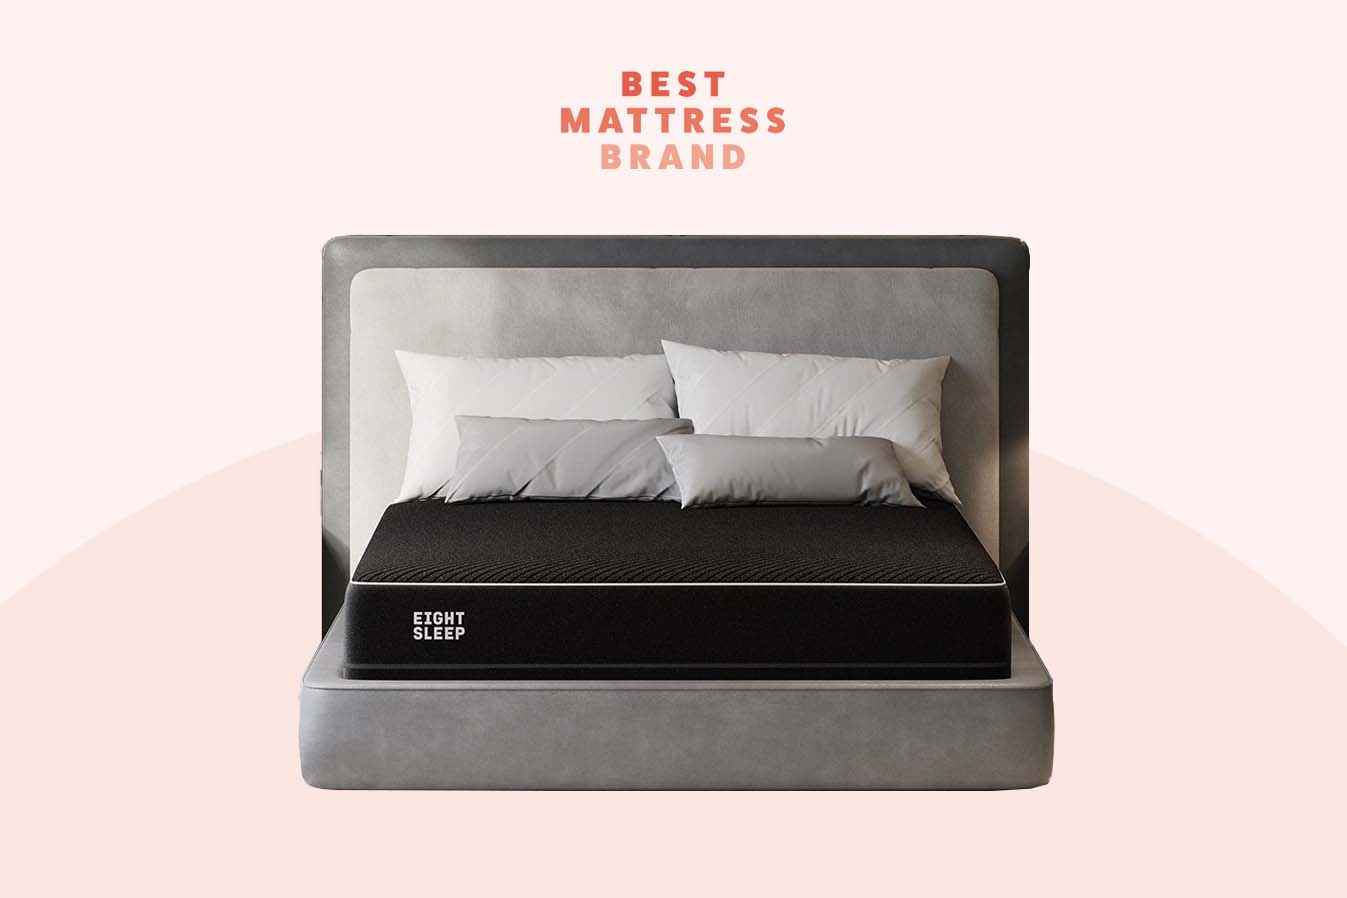 eight sleep pod mattress